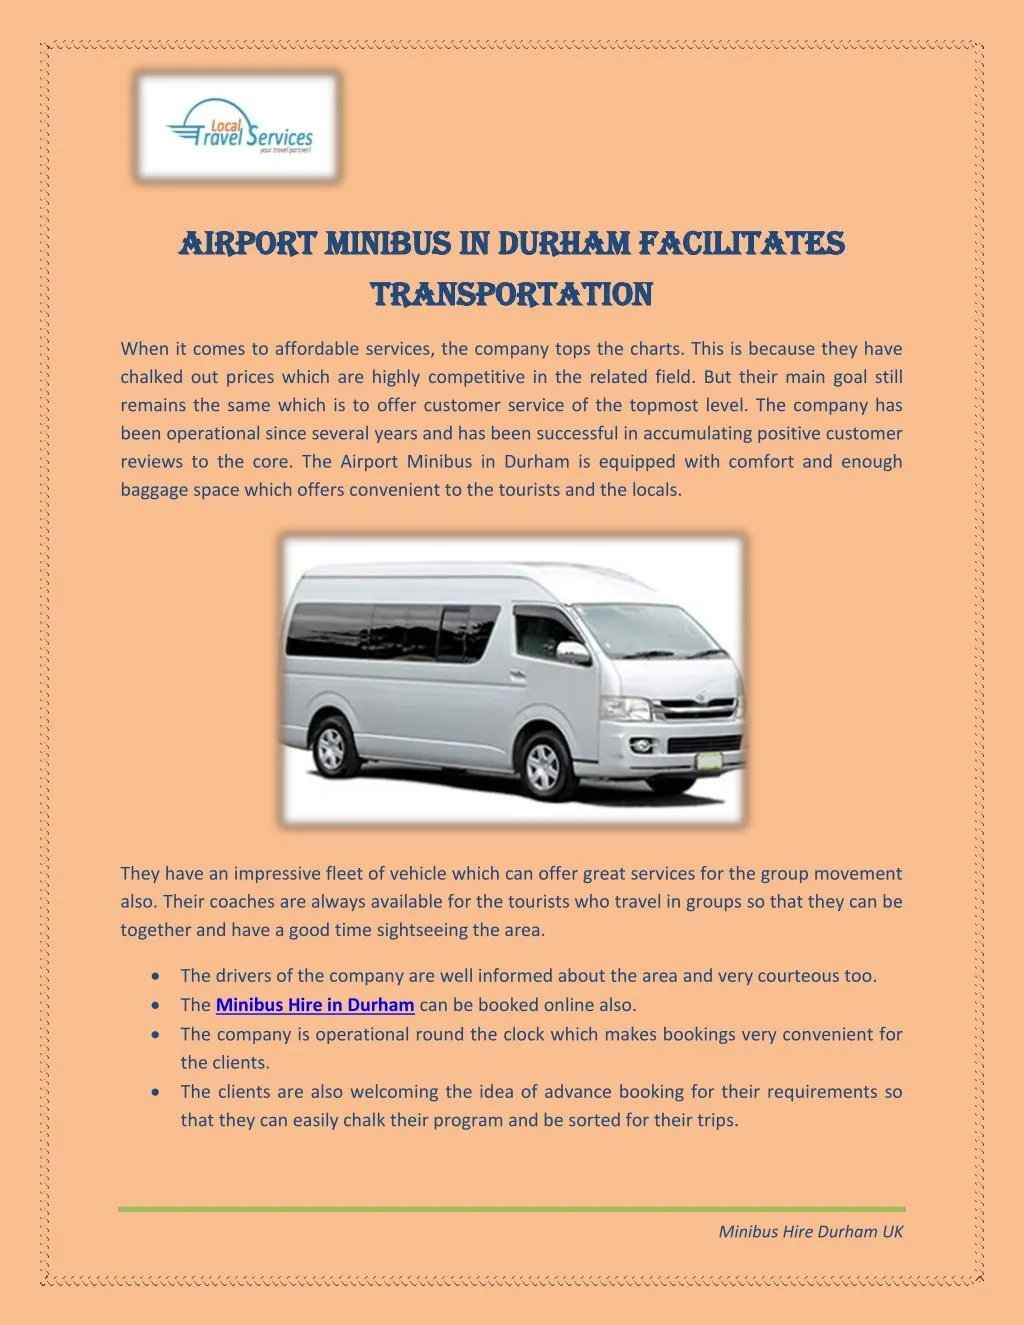 airport minibus in durham facilitates airport